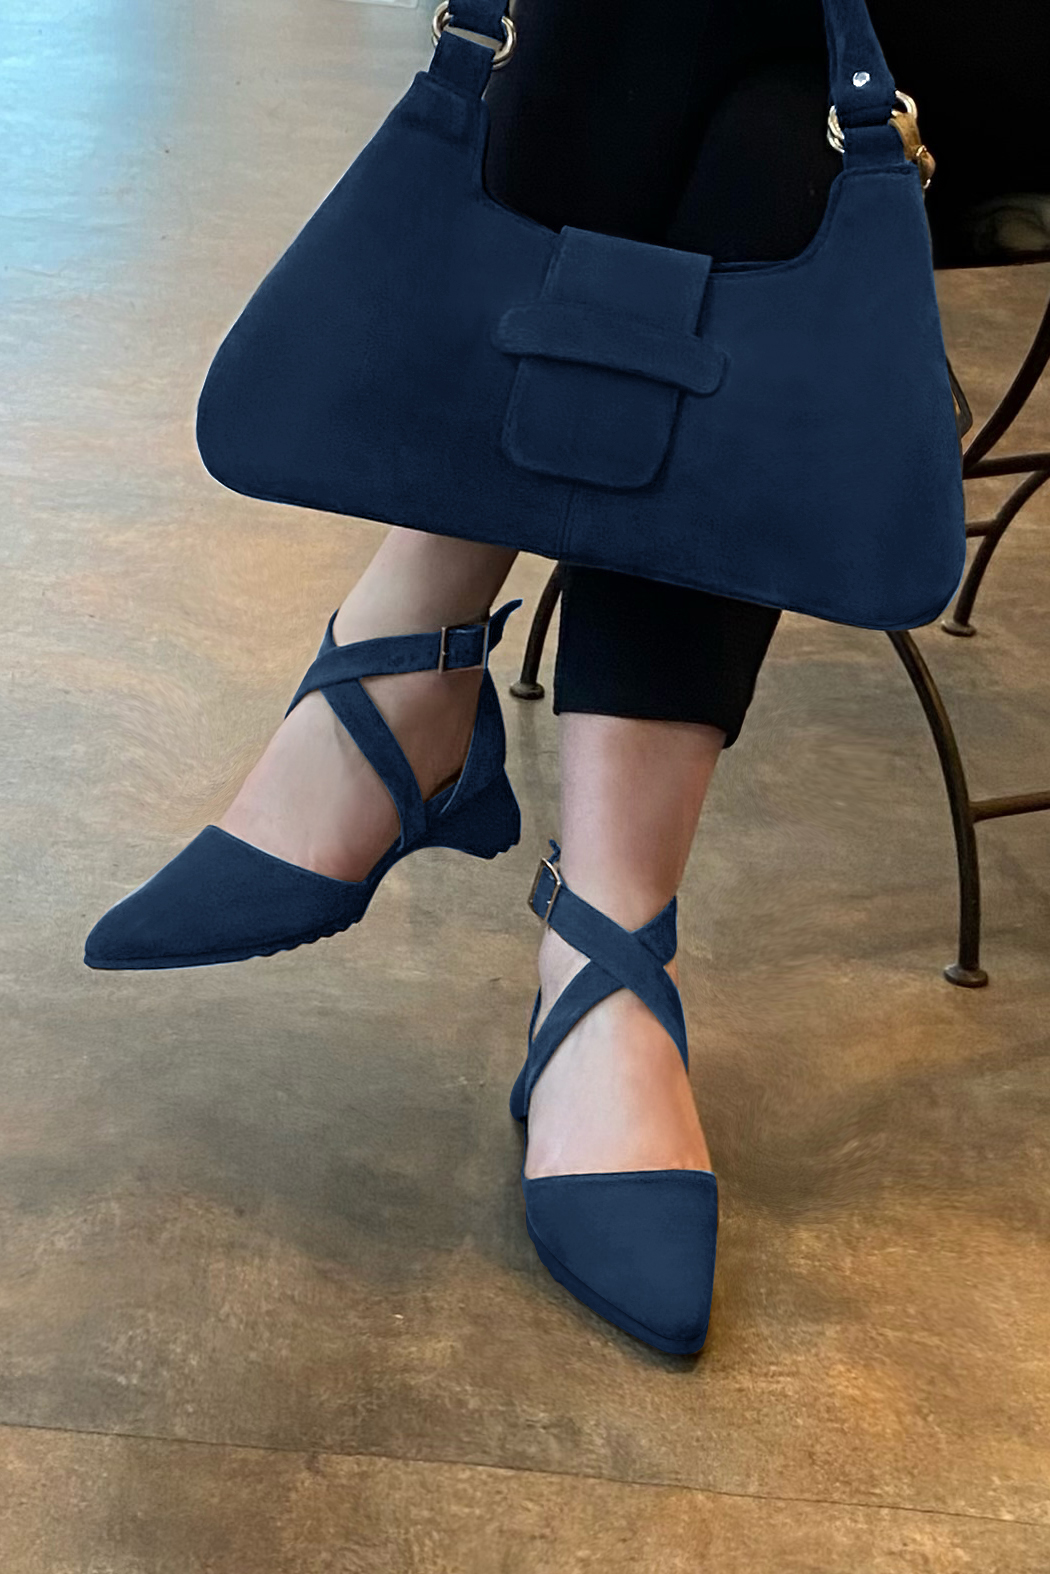 Chaussure femme à brides : Chaussure côtés ouverts brides croisées couleur bleu marine.. Vue porté - Florence KOOIJMAN